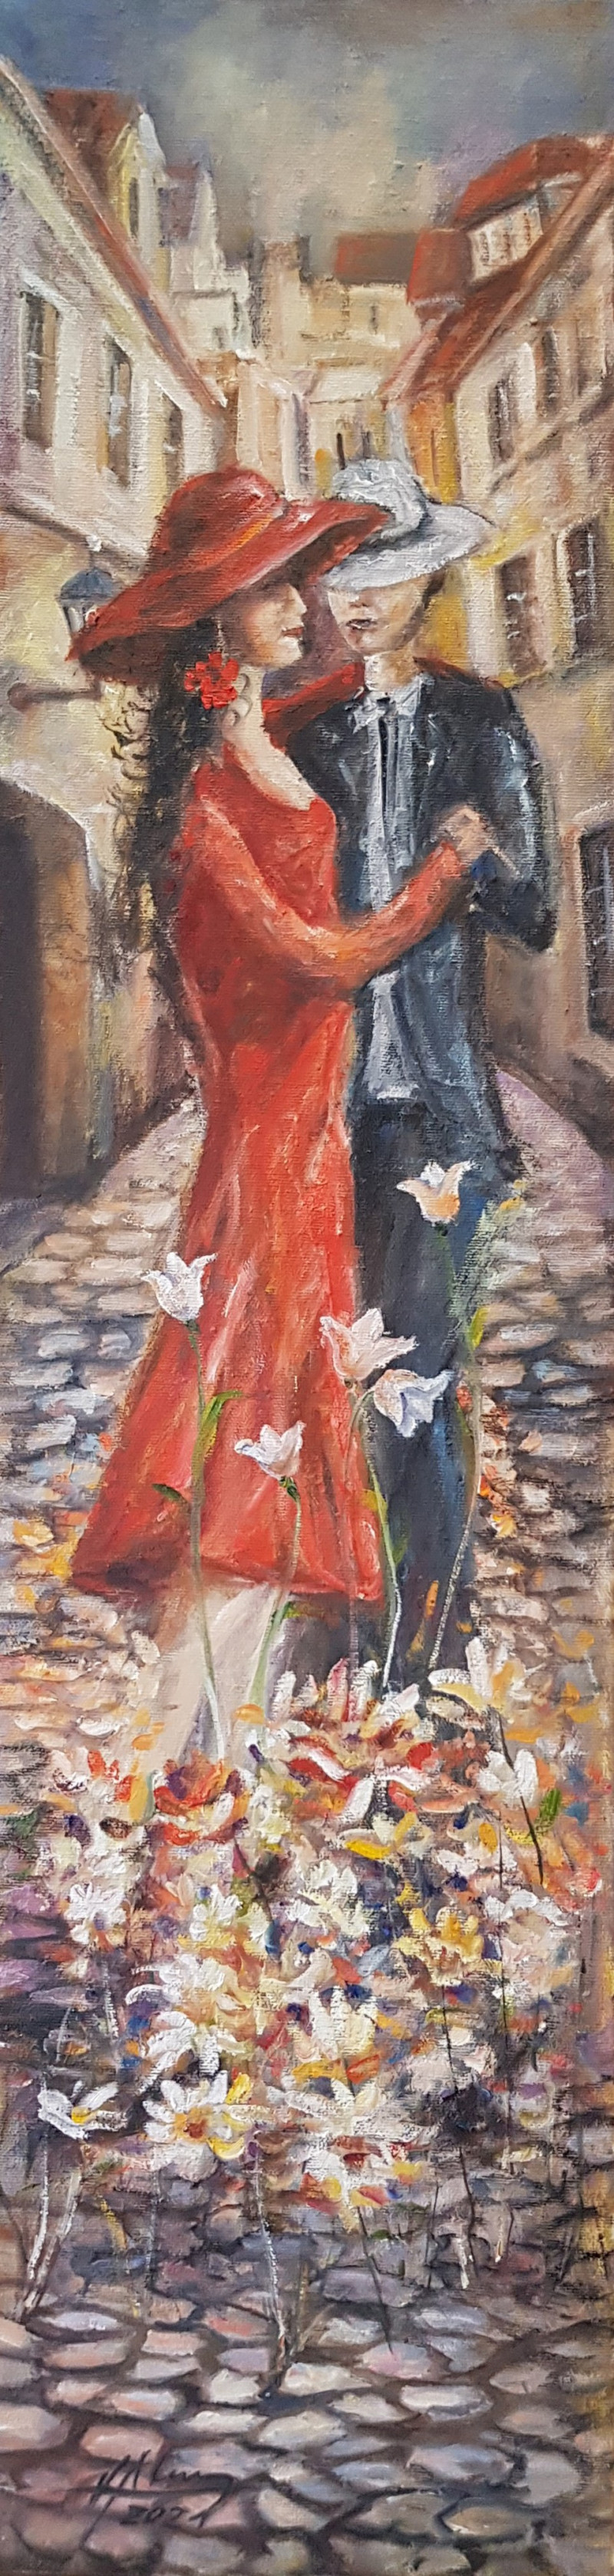 Voldemaras Valius tapytas paveikslas Kai ir akmenys pražysta (Bruko tango), Šokis - Muzika , paveikslai internetu